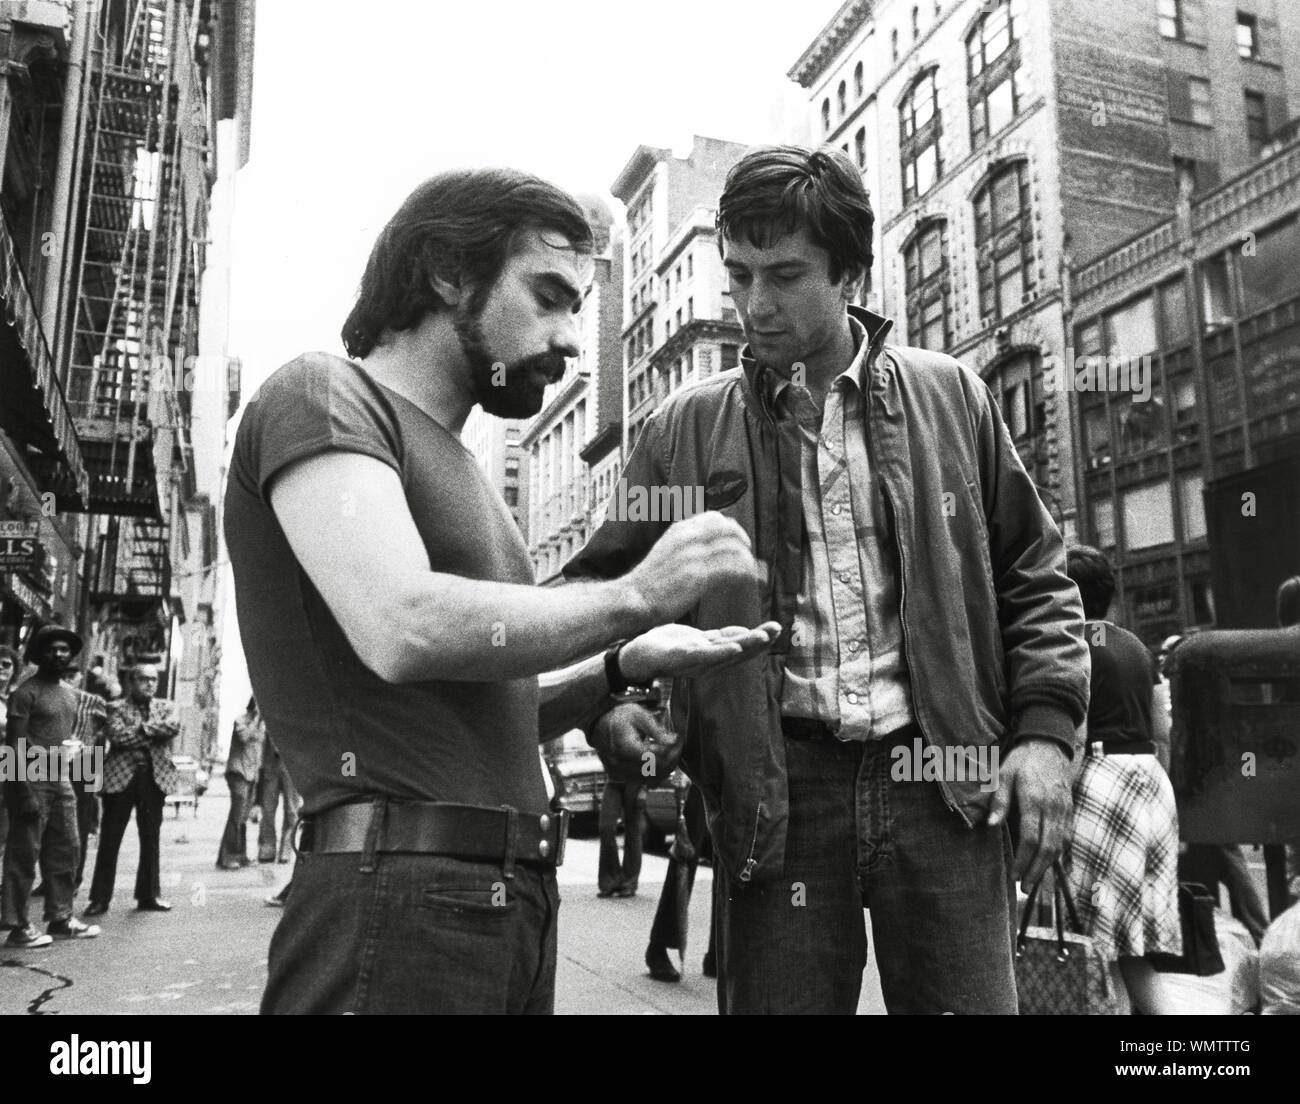 Martin Scorsese e Robert De Niro sul set di "Taxi Driver' (1976) Sikelia Productions / Columbia Pictures Riferimento File # 33848-619THA Foto Stock